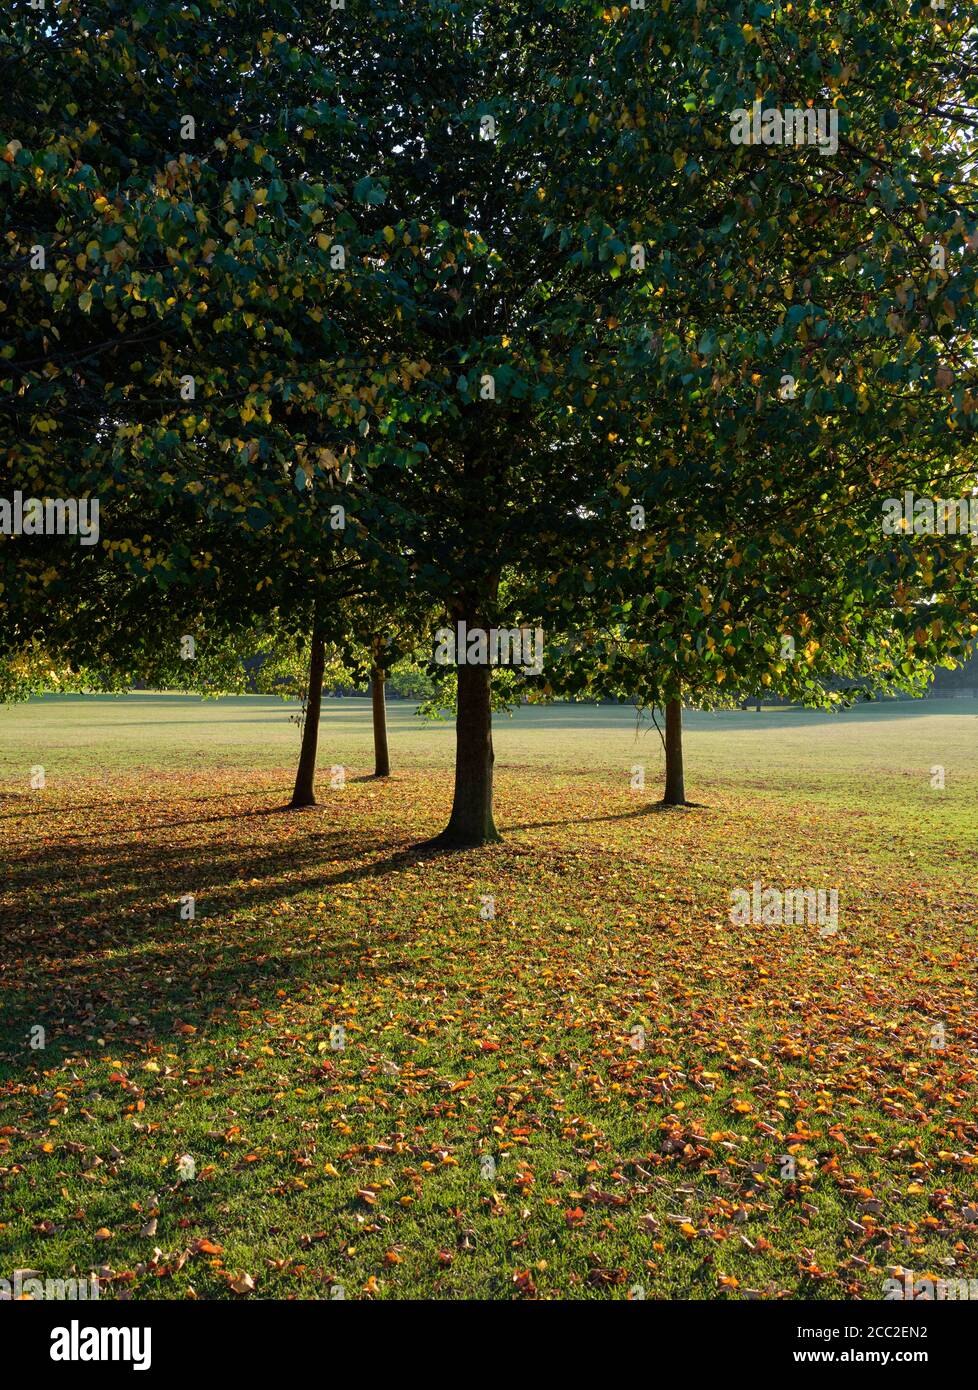 Spätsommer Early Autumn Season - gefallene Blätter und Bäume in einer Parklandschaft Natur Hintergrund. Stockfoto